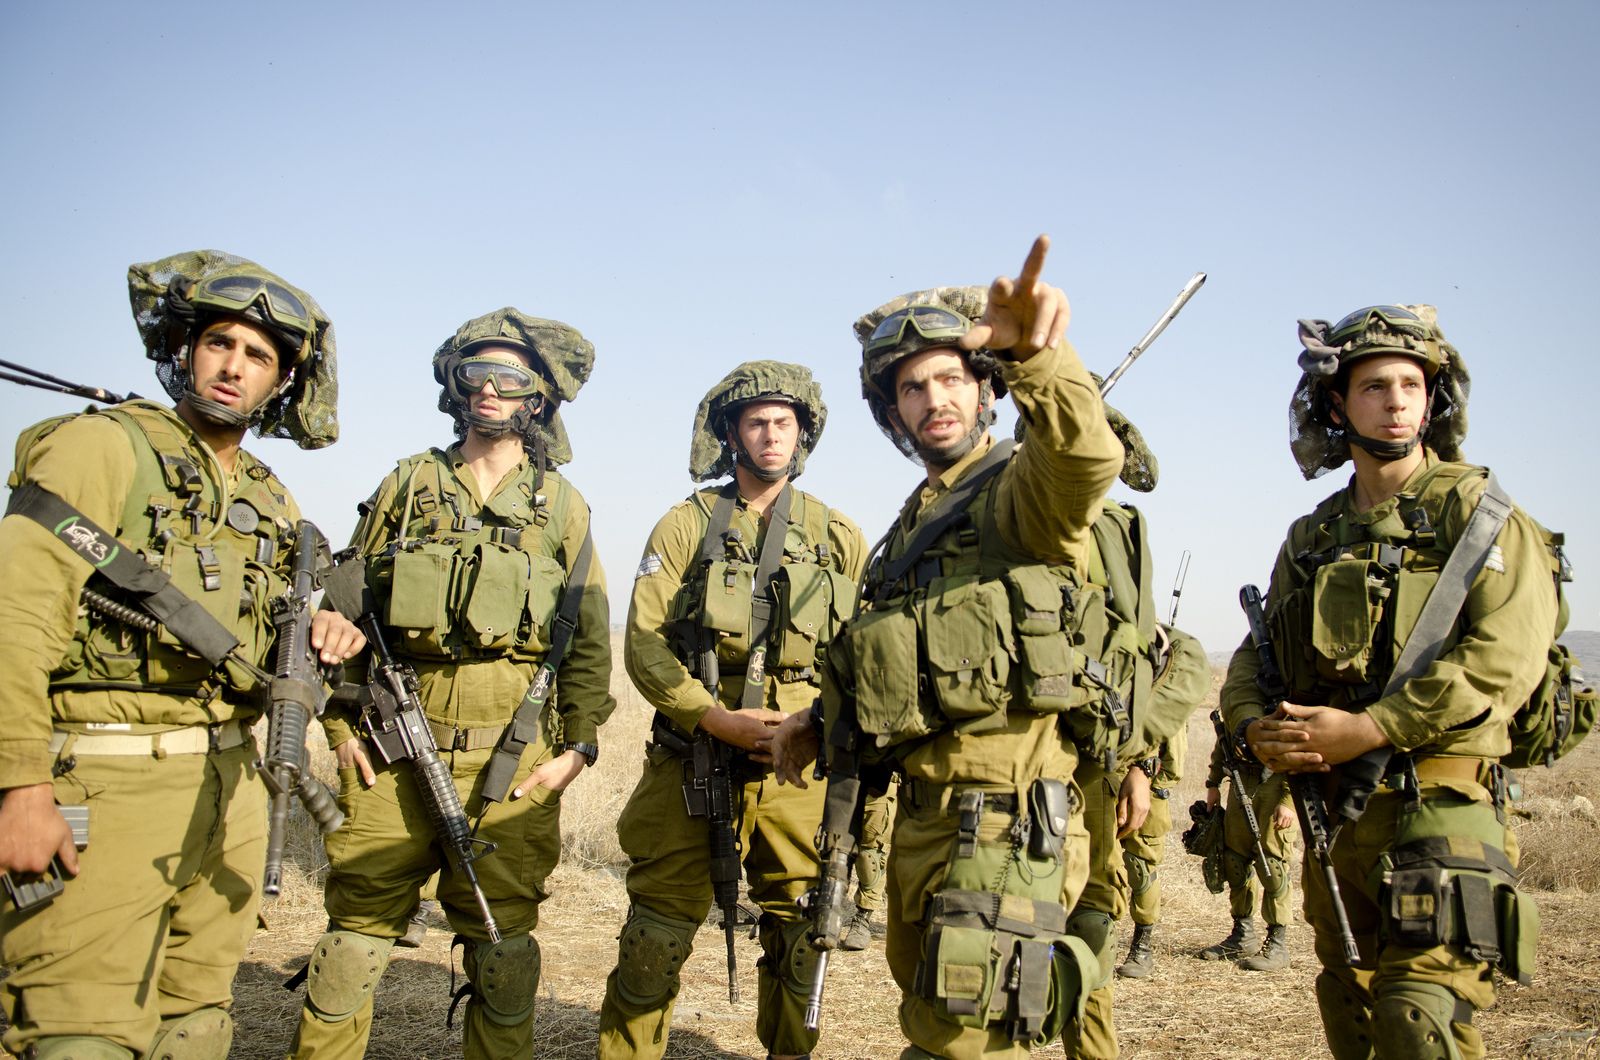 جنود "اسرائيل" العرب؛ بين عنصرية "رفاق السلاح" وفقدان الهوية